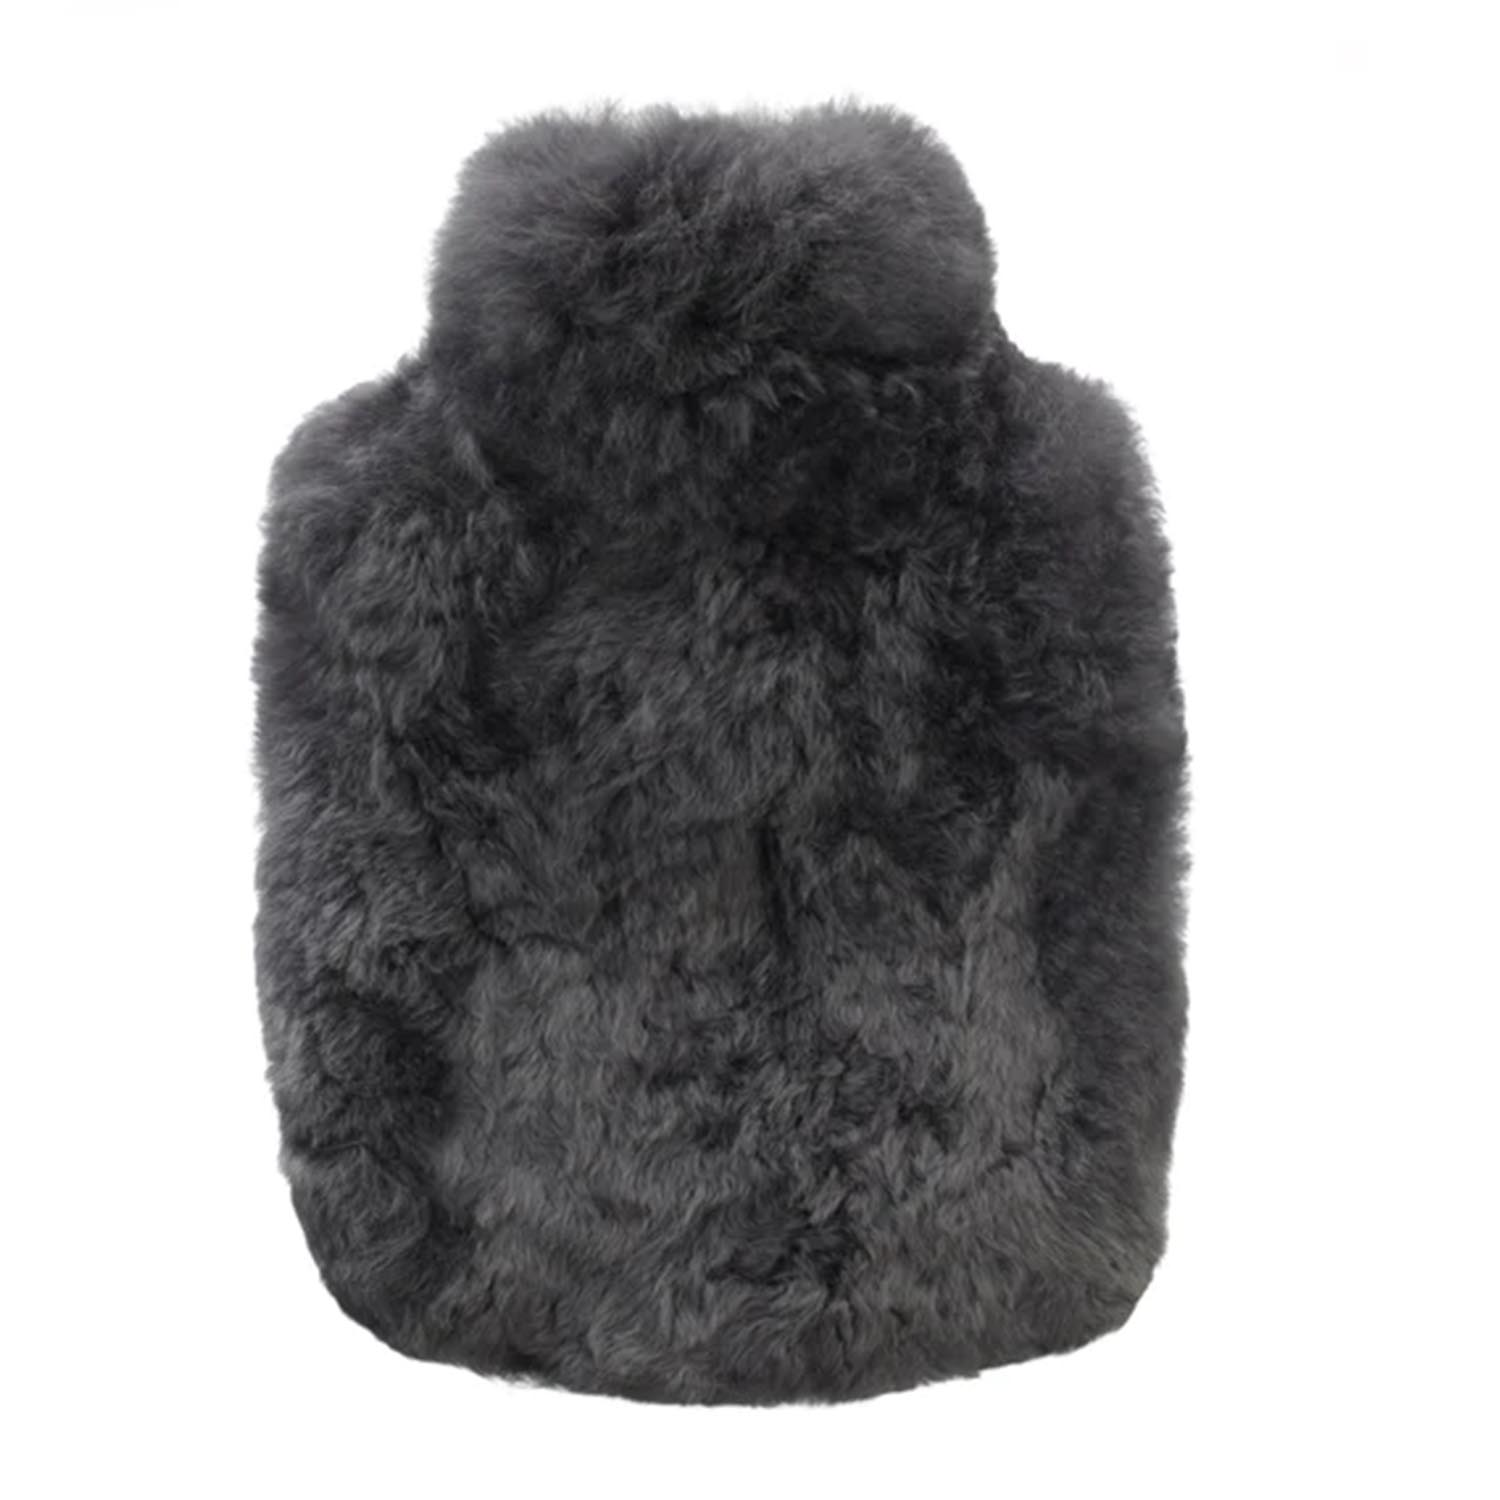 Wärmeflasche Calmo, Farbe graphite grey, Grösse regular (1,8l) von Weich Couture Alpaca